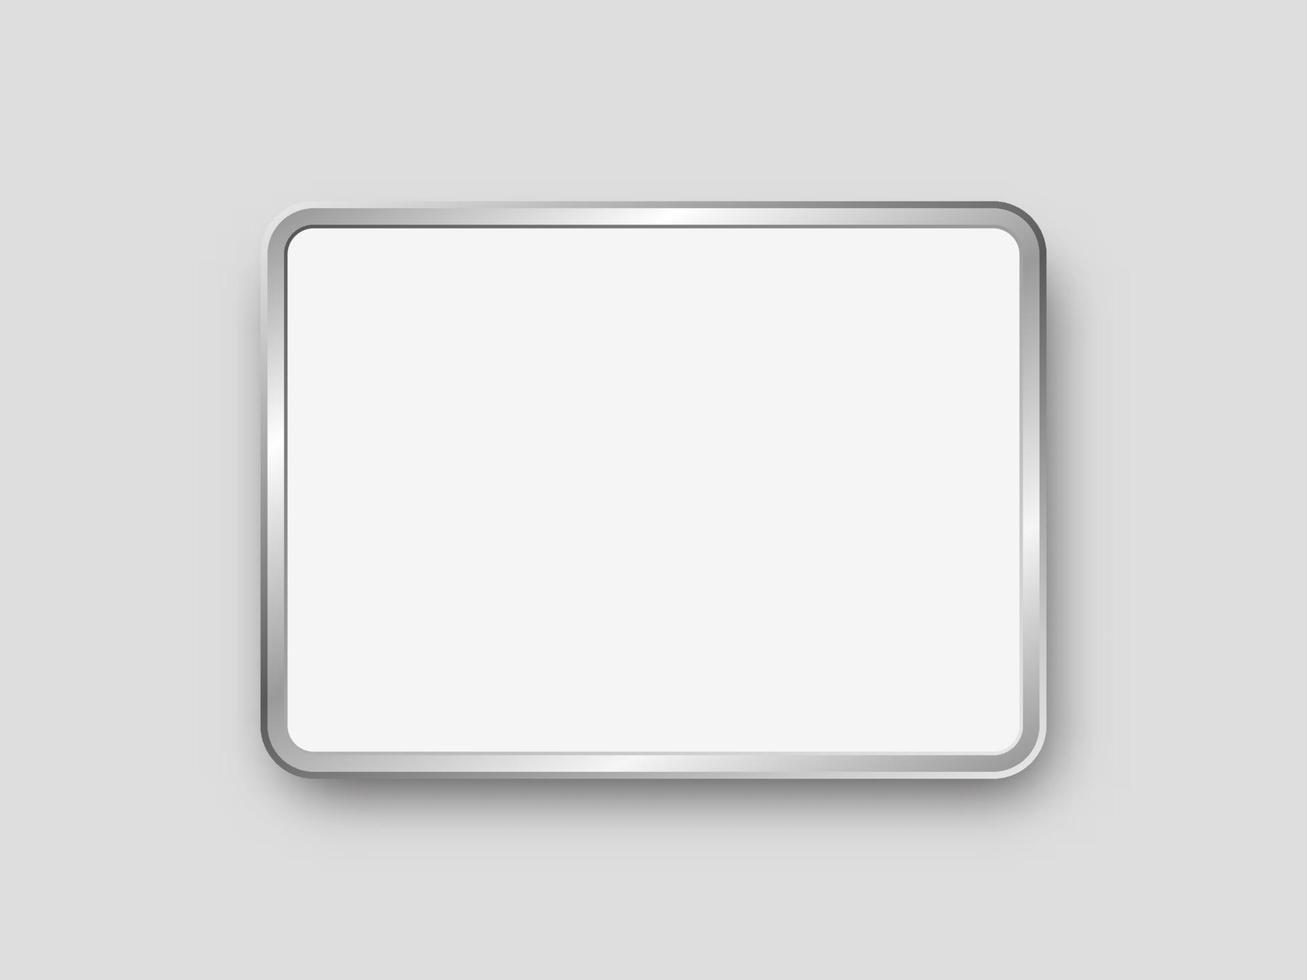 Tablet-PC mit Mockup des leeren Bildschirms lokalisiert auf weißem Hintergrund. elektronisches Gerät oder Gadget mit weißem Display. moderne vektorillustration für werbung, förderung, branding. vektor